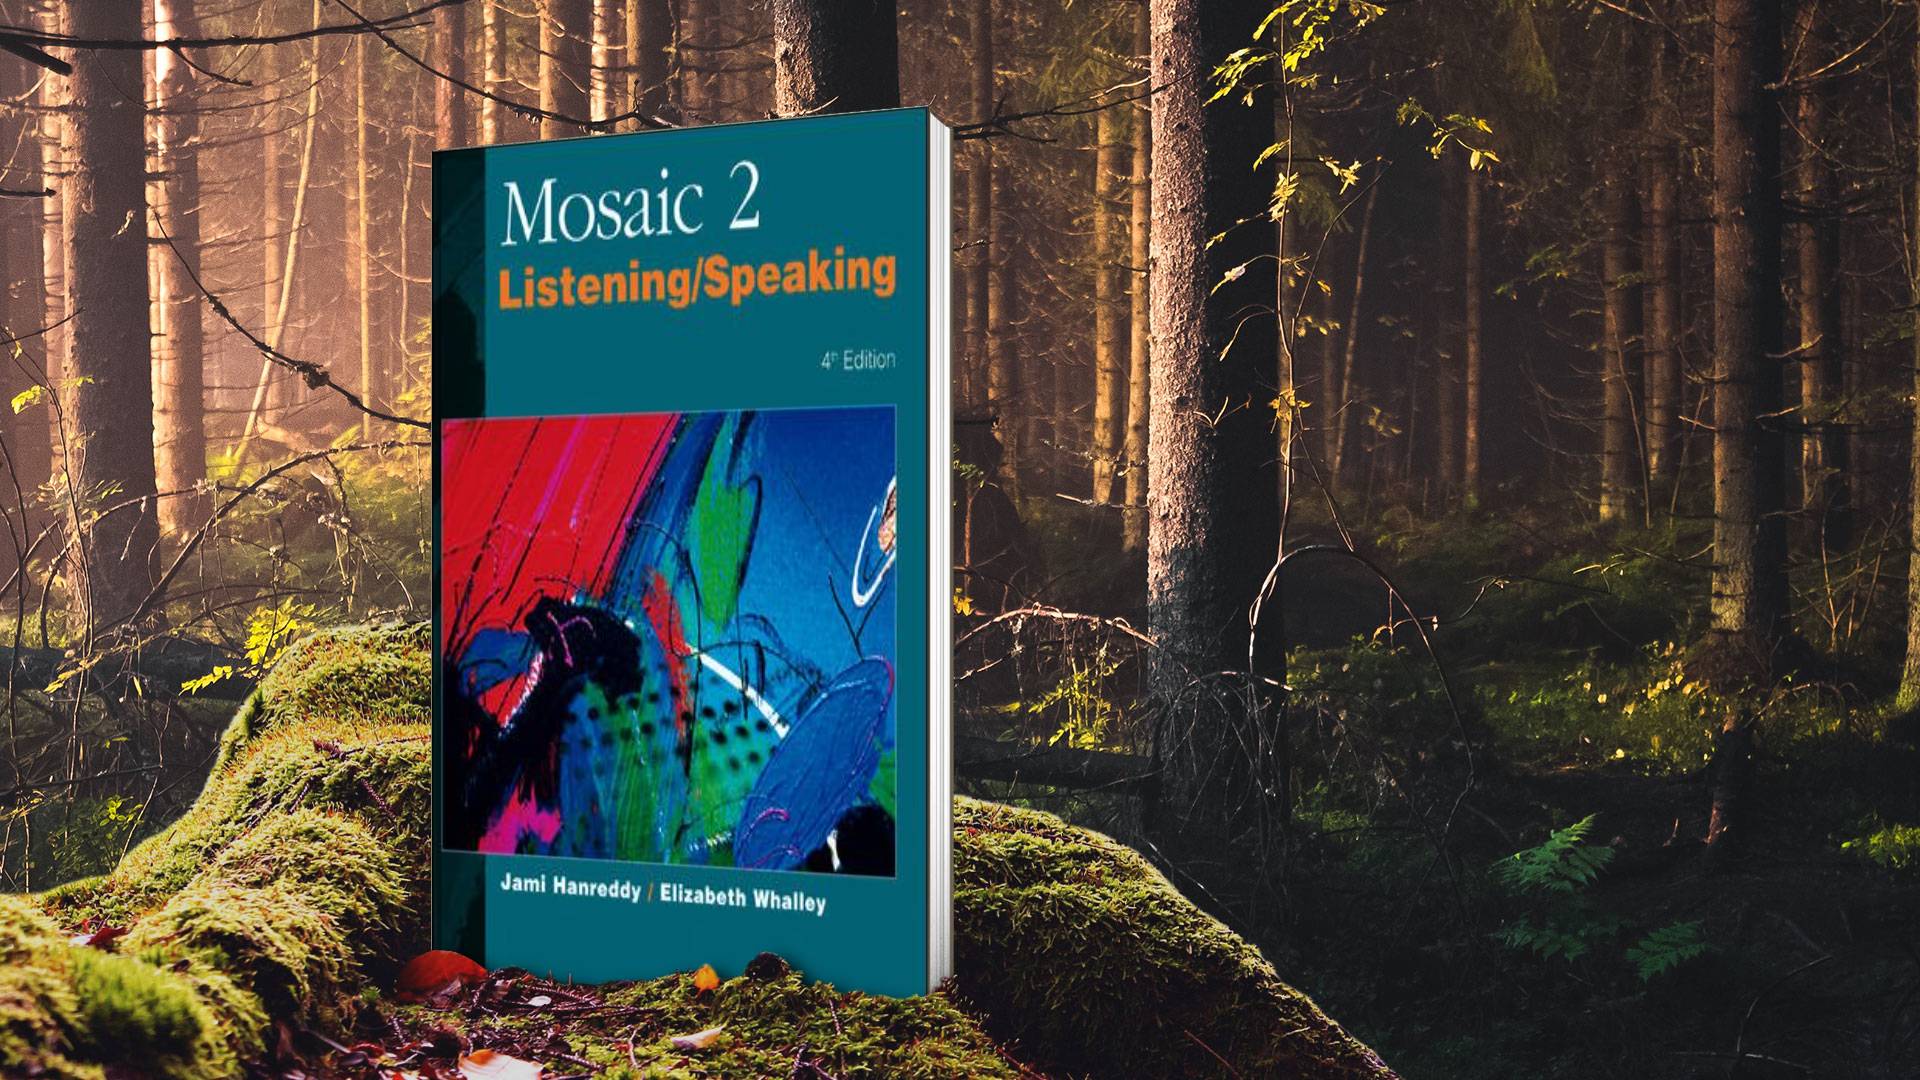 خرید کتاب زبان | کتاب زبان | Mosaic 2 Listening Speaking 4th Edition | موزاییک دو لیسنیگ اند اسپیکینگ ویرایش چهارم